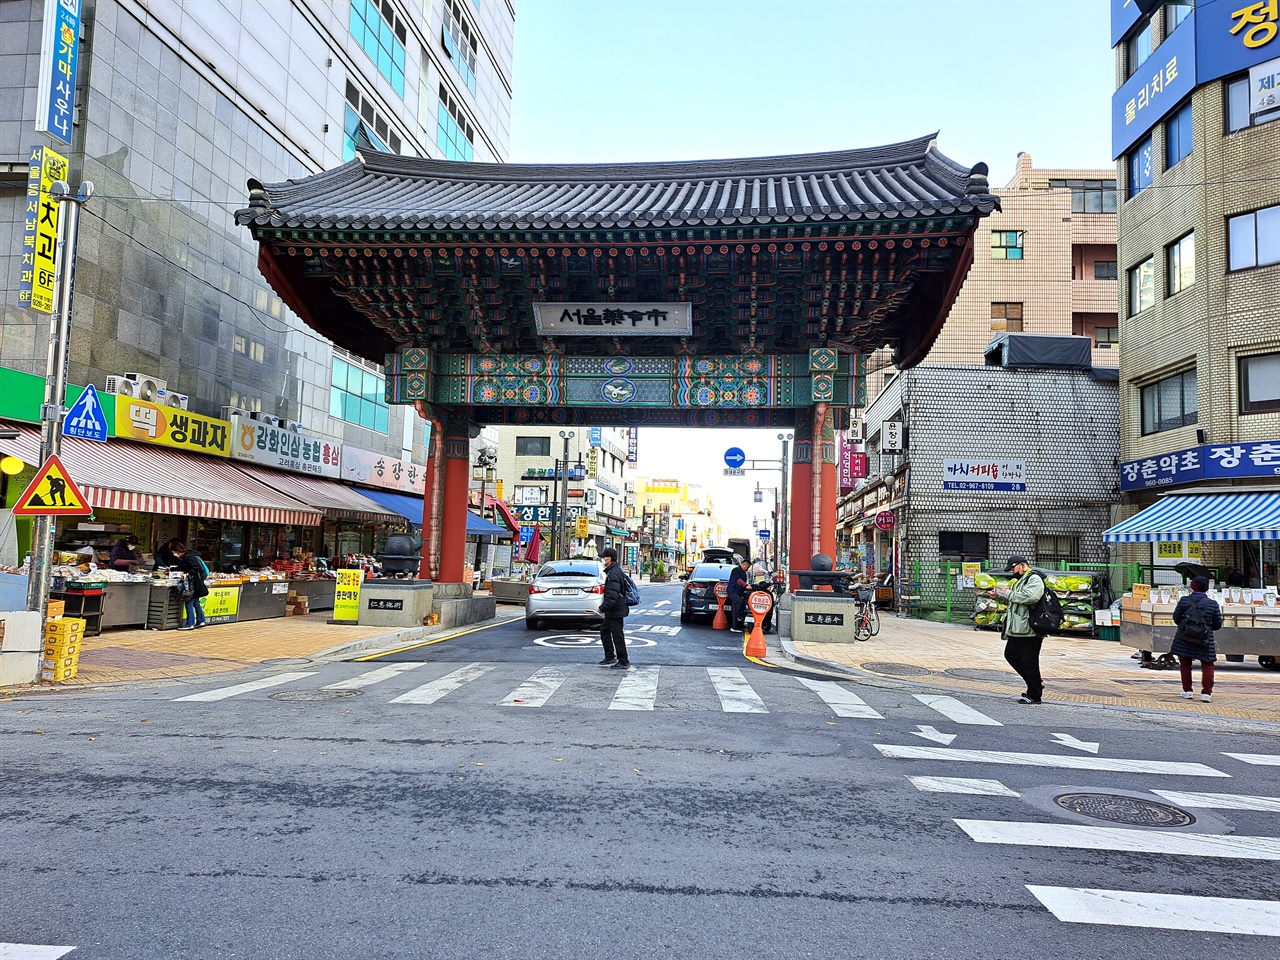 서울 약령시 주 출입구에 세워진 일주문 형식의 게이트. 이 문 북쪽으로 한약재상과 한의원이 즐비한 특화된 공간구조가 형성되어 있다.